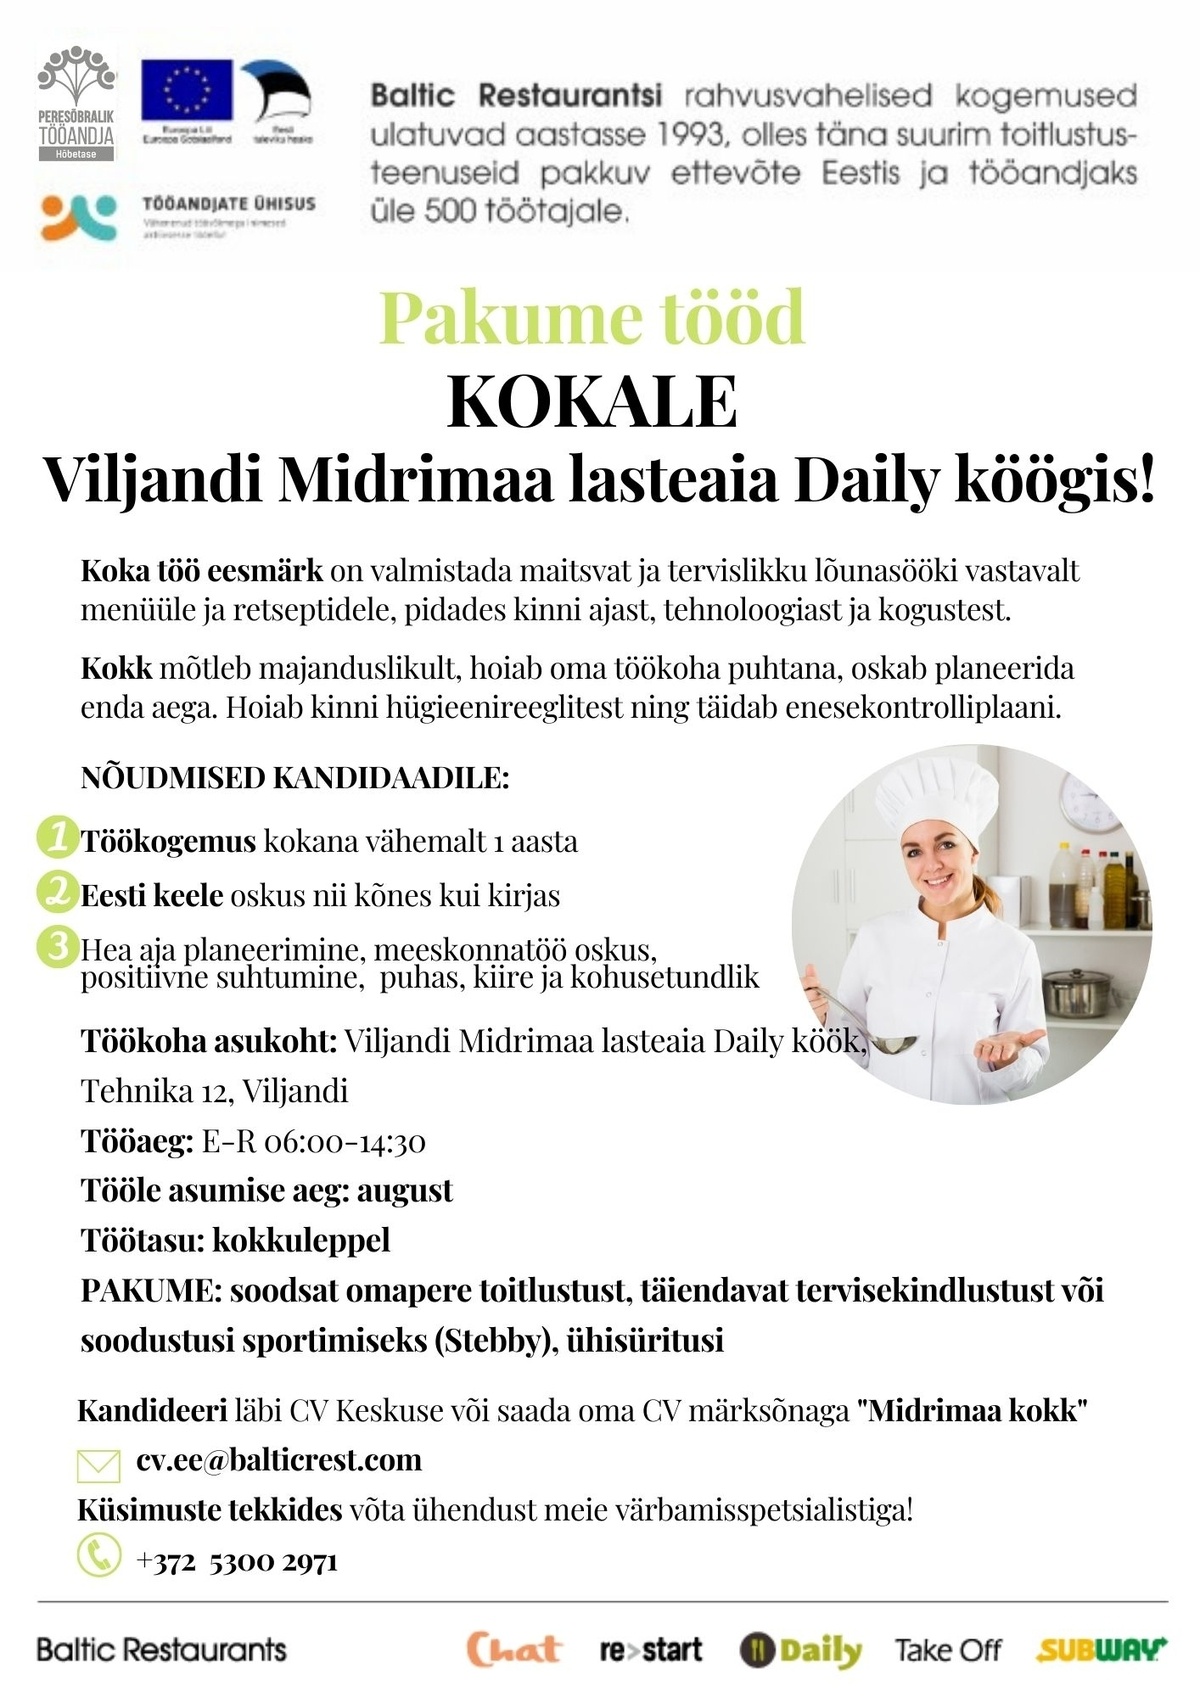 BALTIC RESTAURANTS ESTONIA AS KOKK Viljandi Midrimaa lasteaia DAILY kööki!